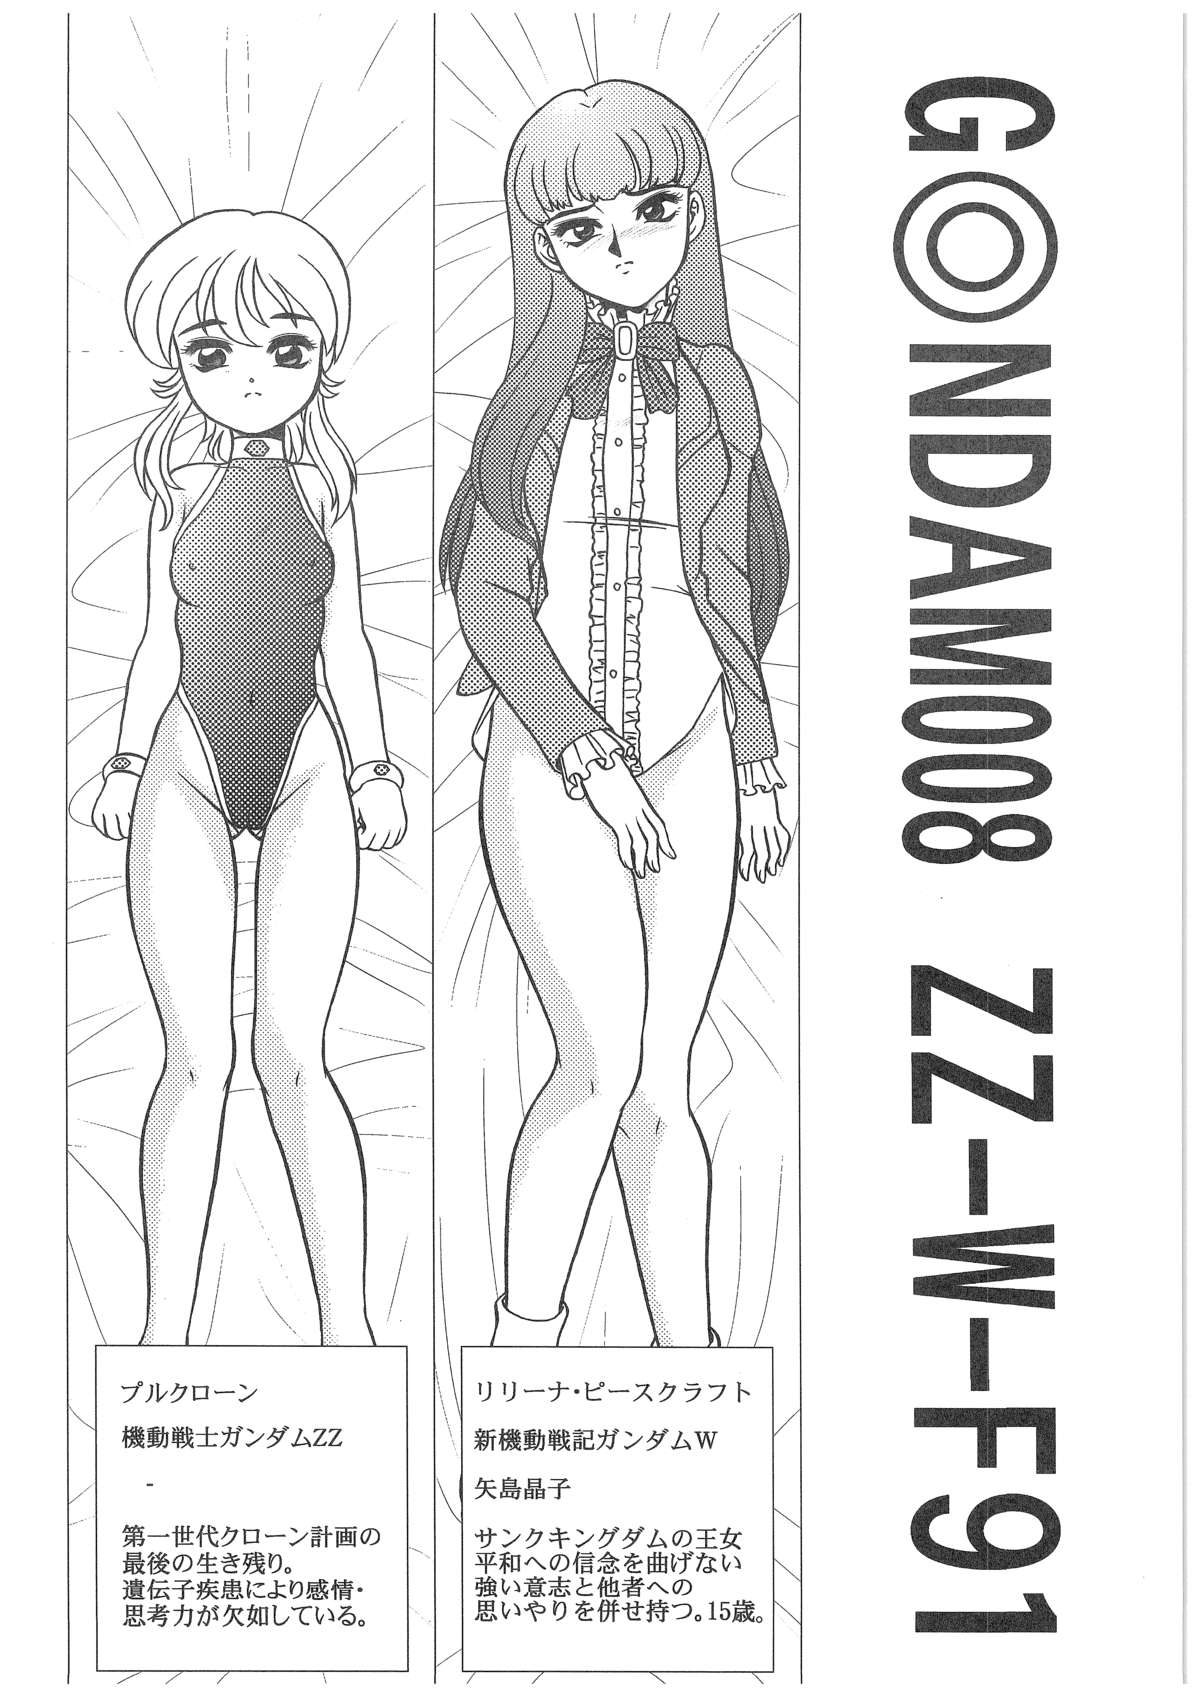 [Dakimakuma, Jingai Makyou Club (WING☆BIRD)] CHARA EMU W☆B010 GONDAM 008 ZZ-W-F91 (Various) page 3 full